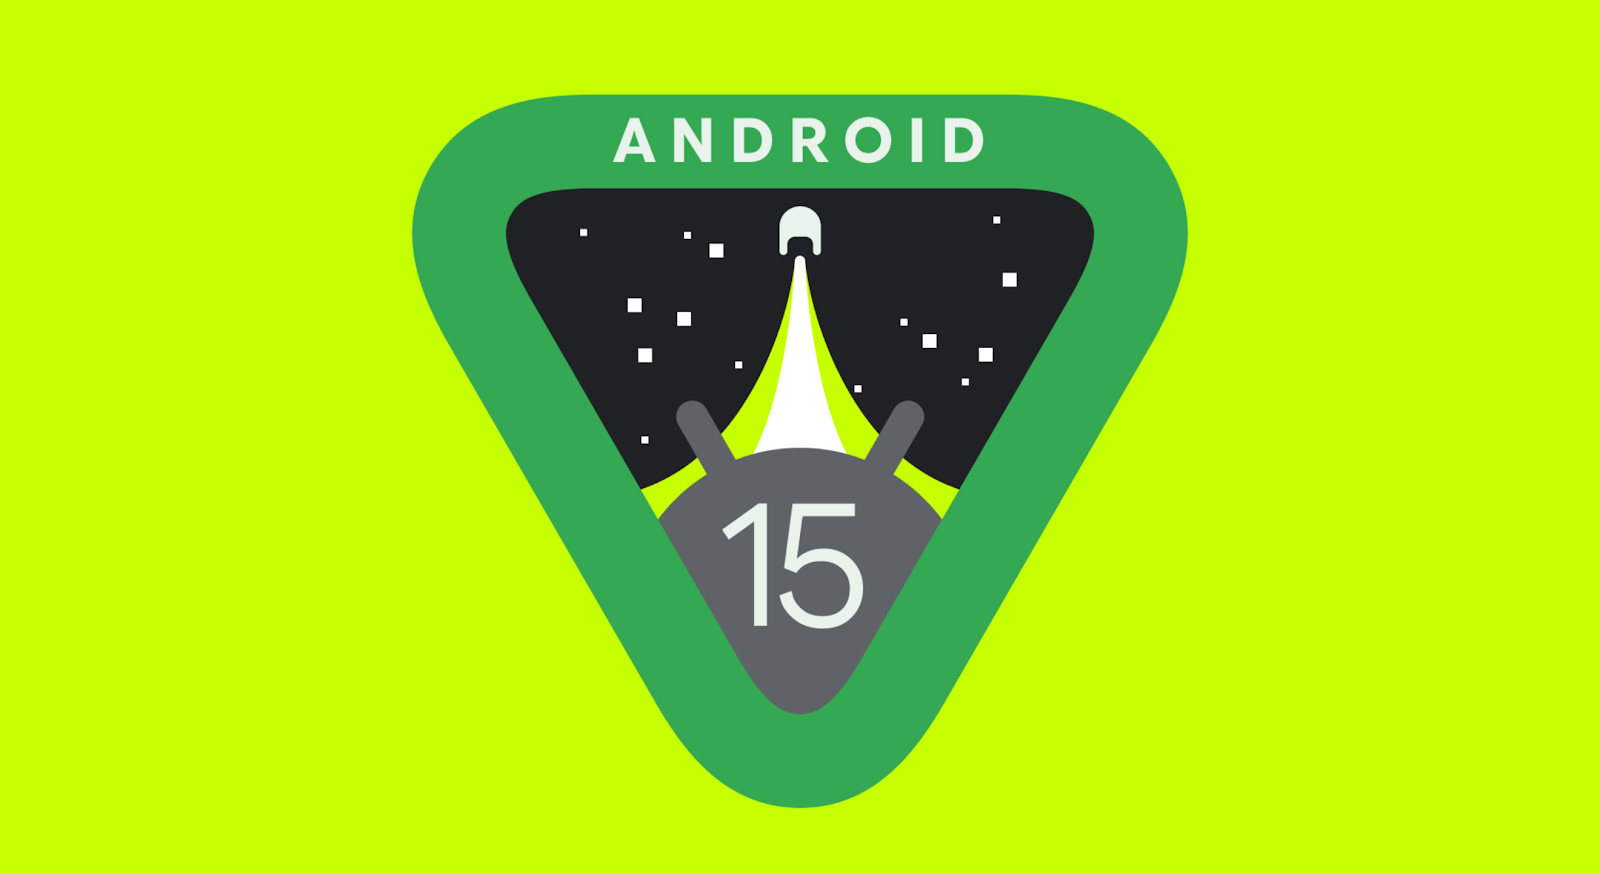 Google a publié la première version d'Android 15 destinée aux développeurs.